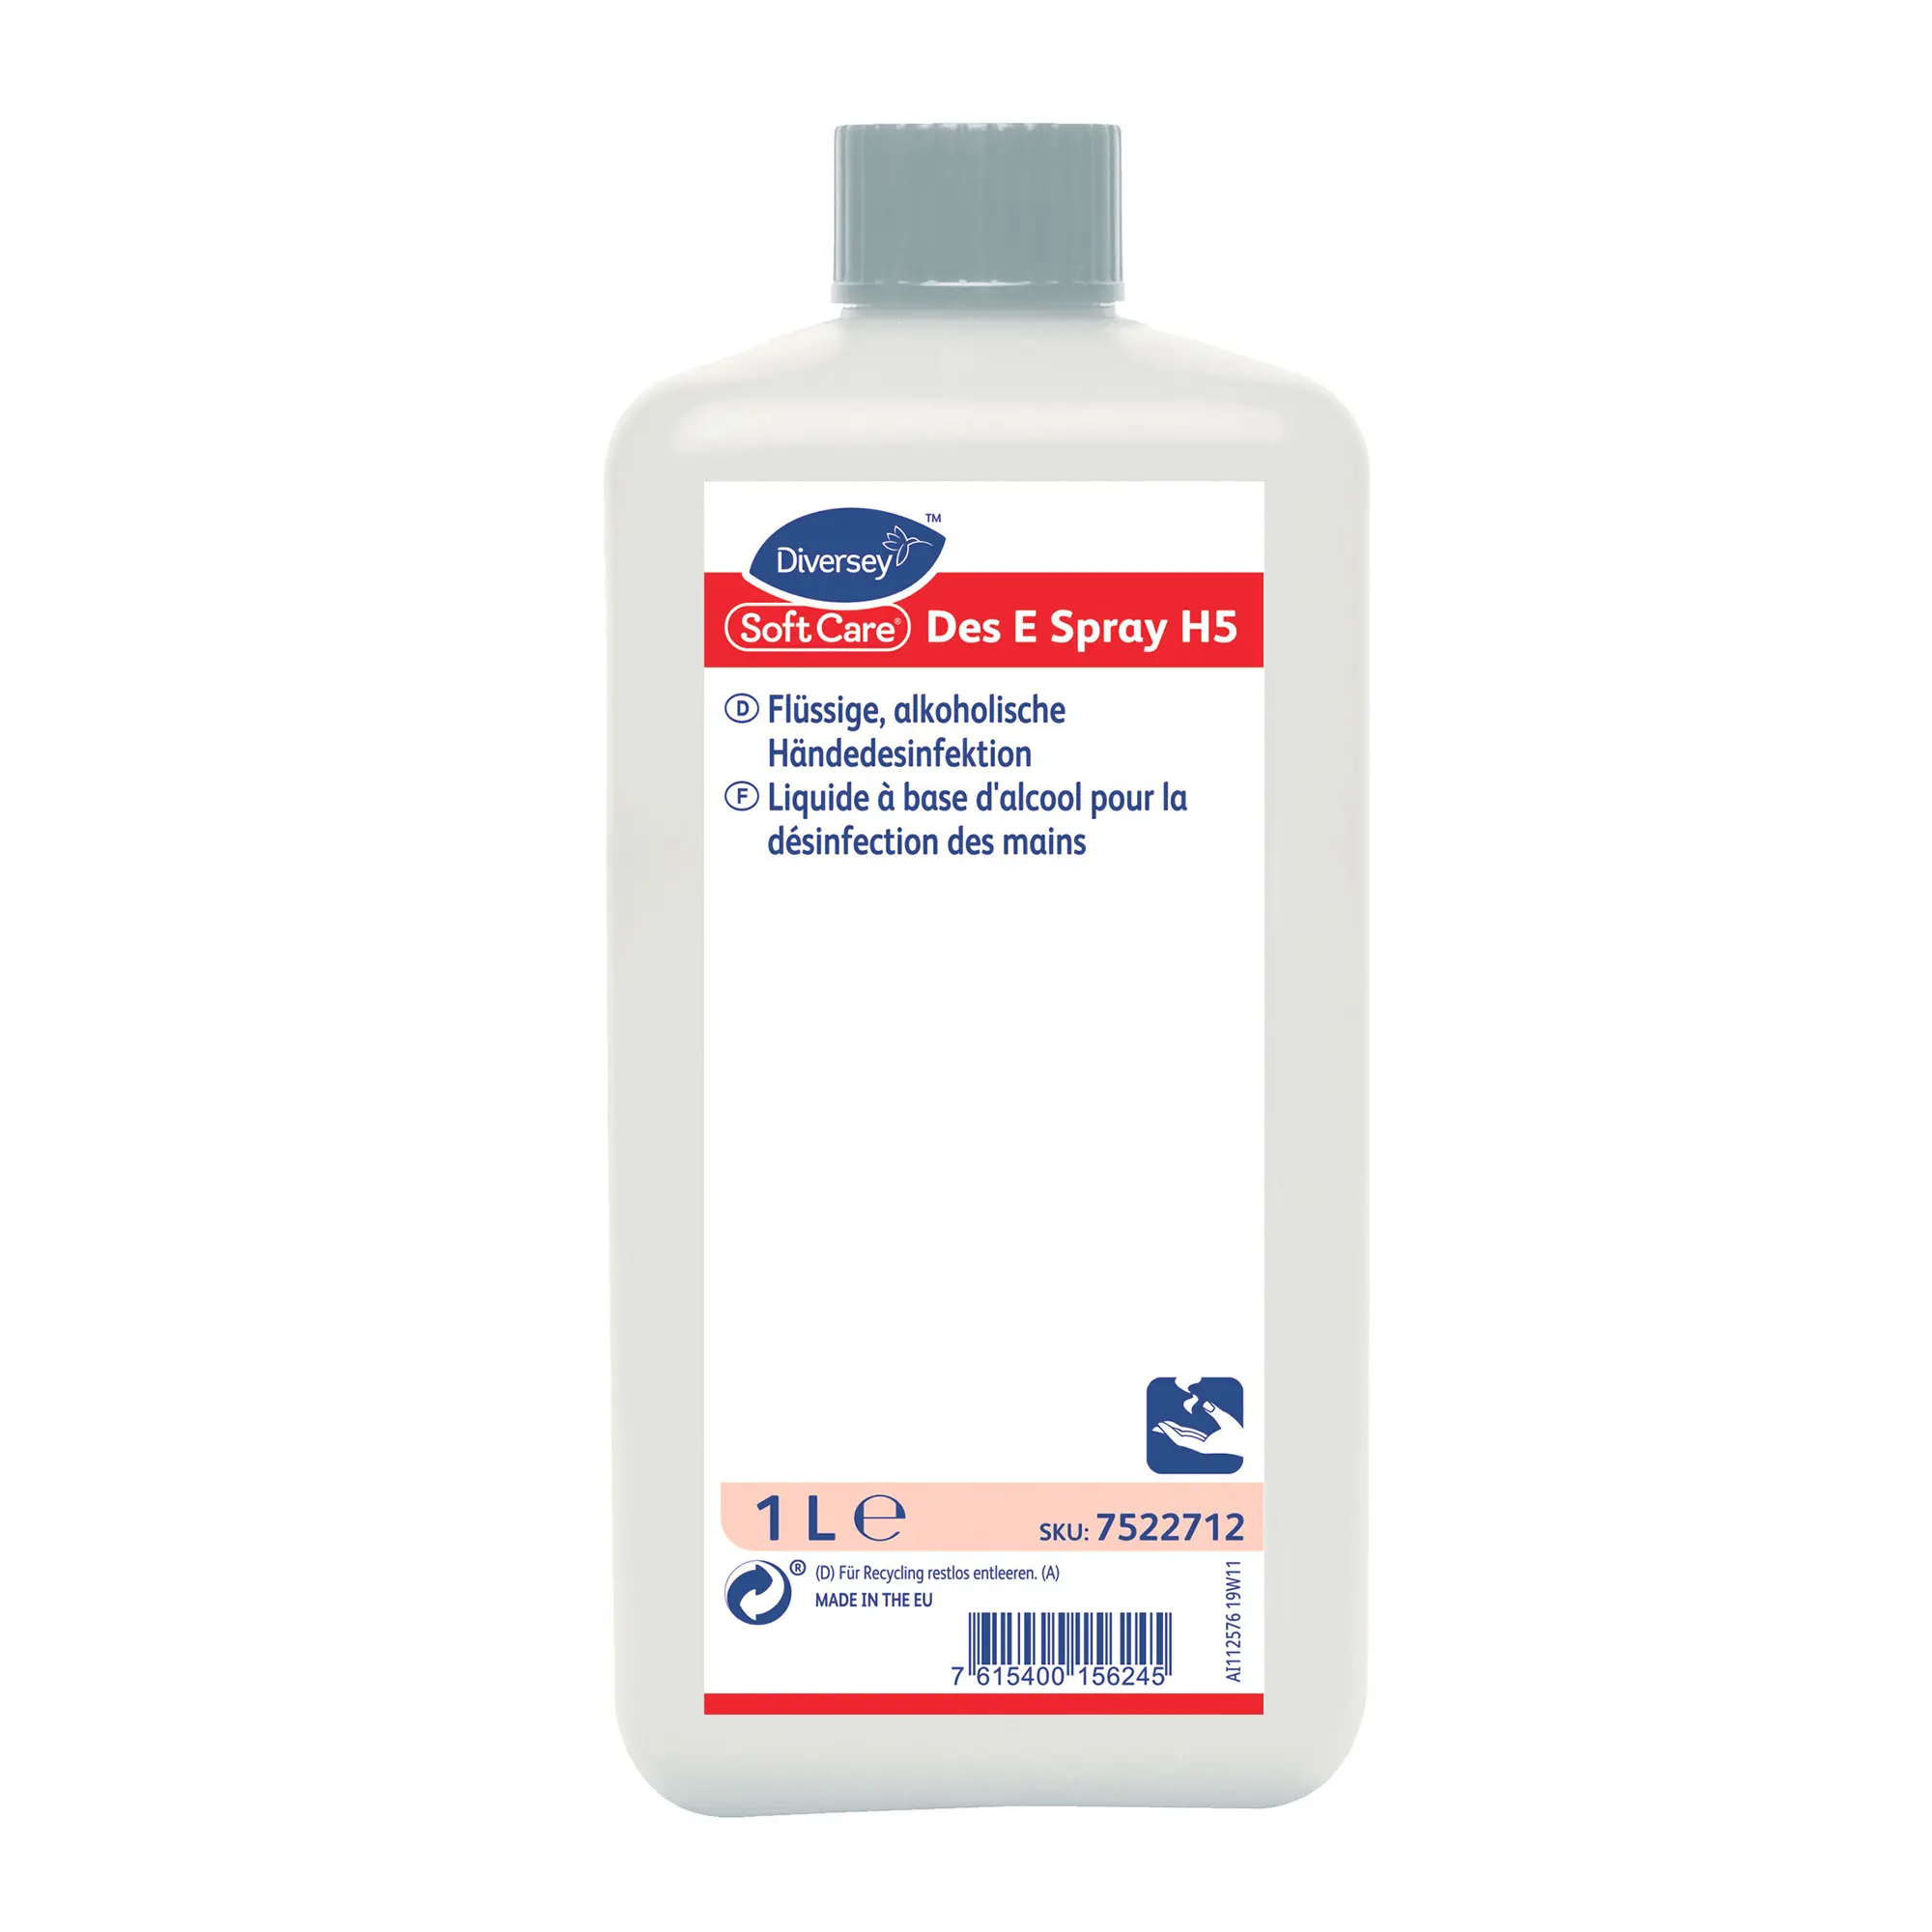 Soft Care Des E Spray H5 Händedesinfektionsmittel 1 Liter Flasche 7522712_1